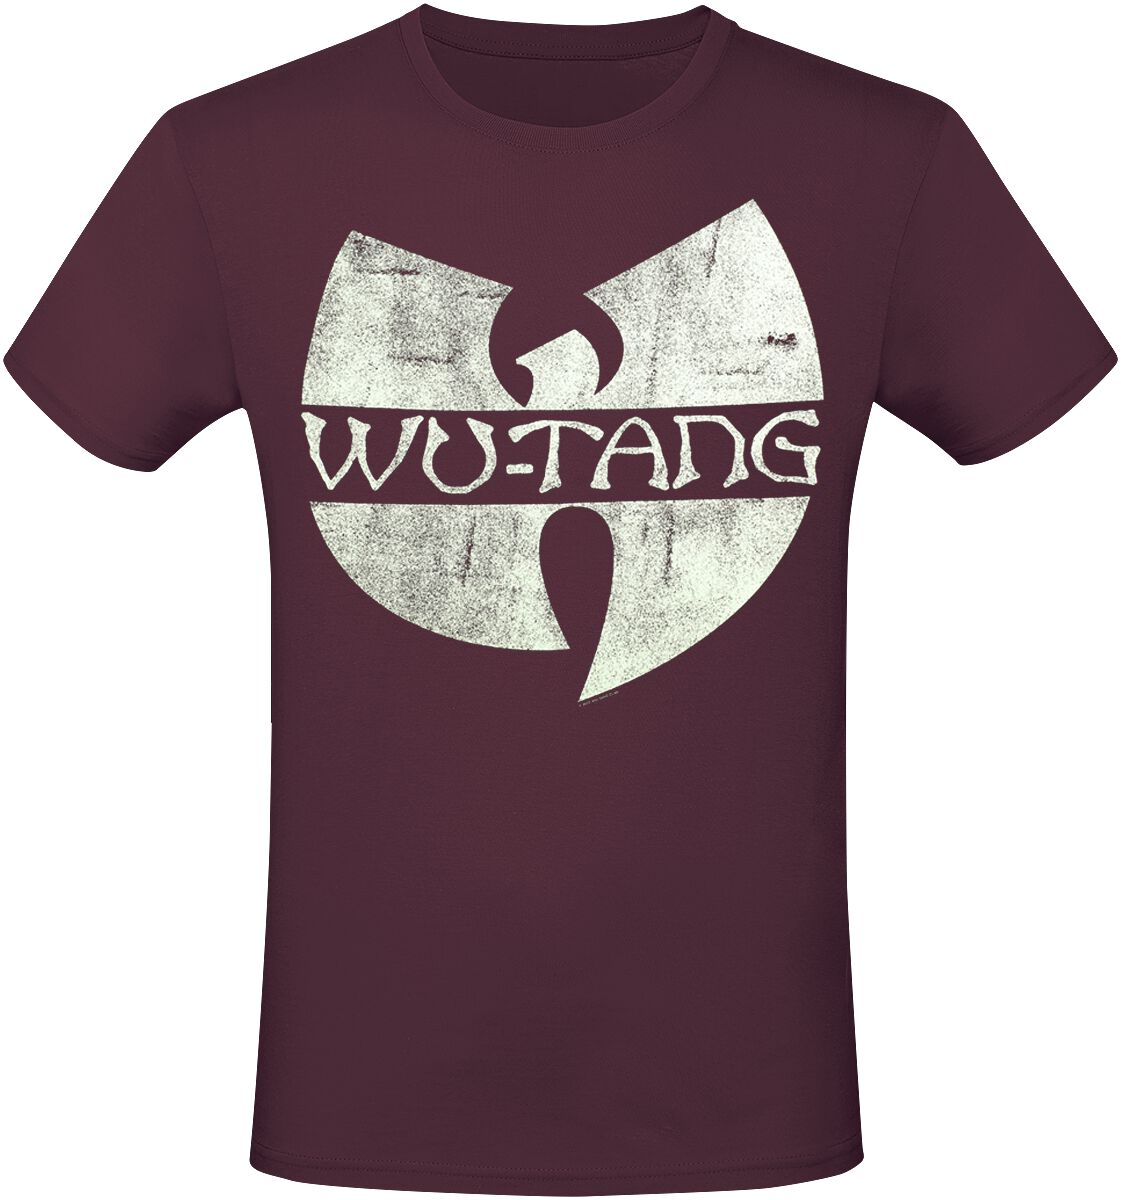 Wu-Tang Clan T-Shirt - Logo - S bis XXL - für Männer - Größe L - rot  - Lizenziertes Merchandise!